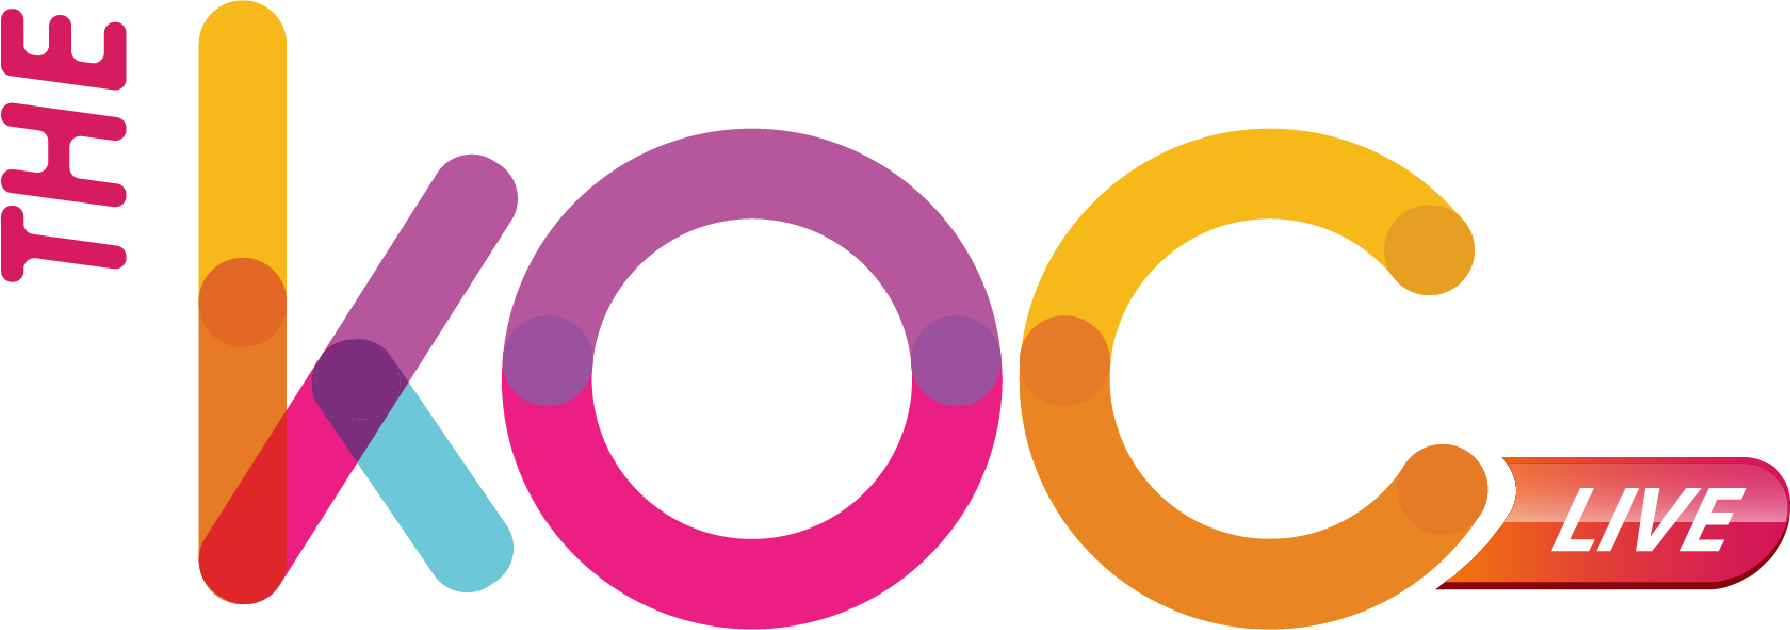 KOC live logo png